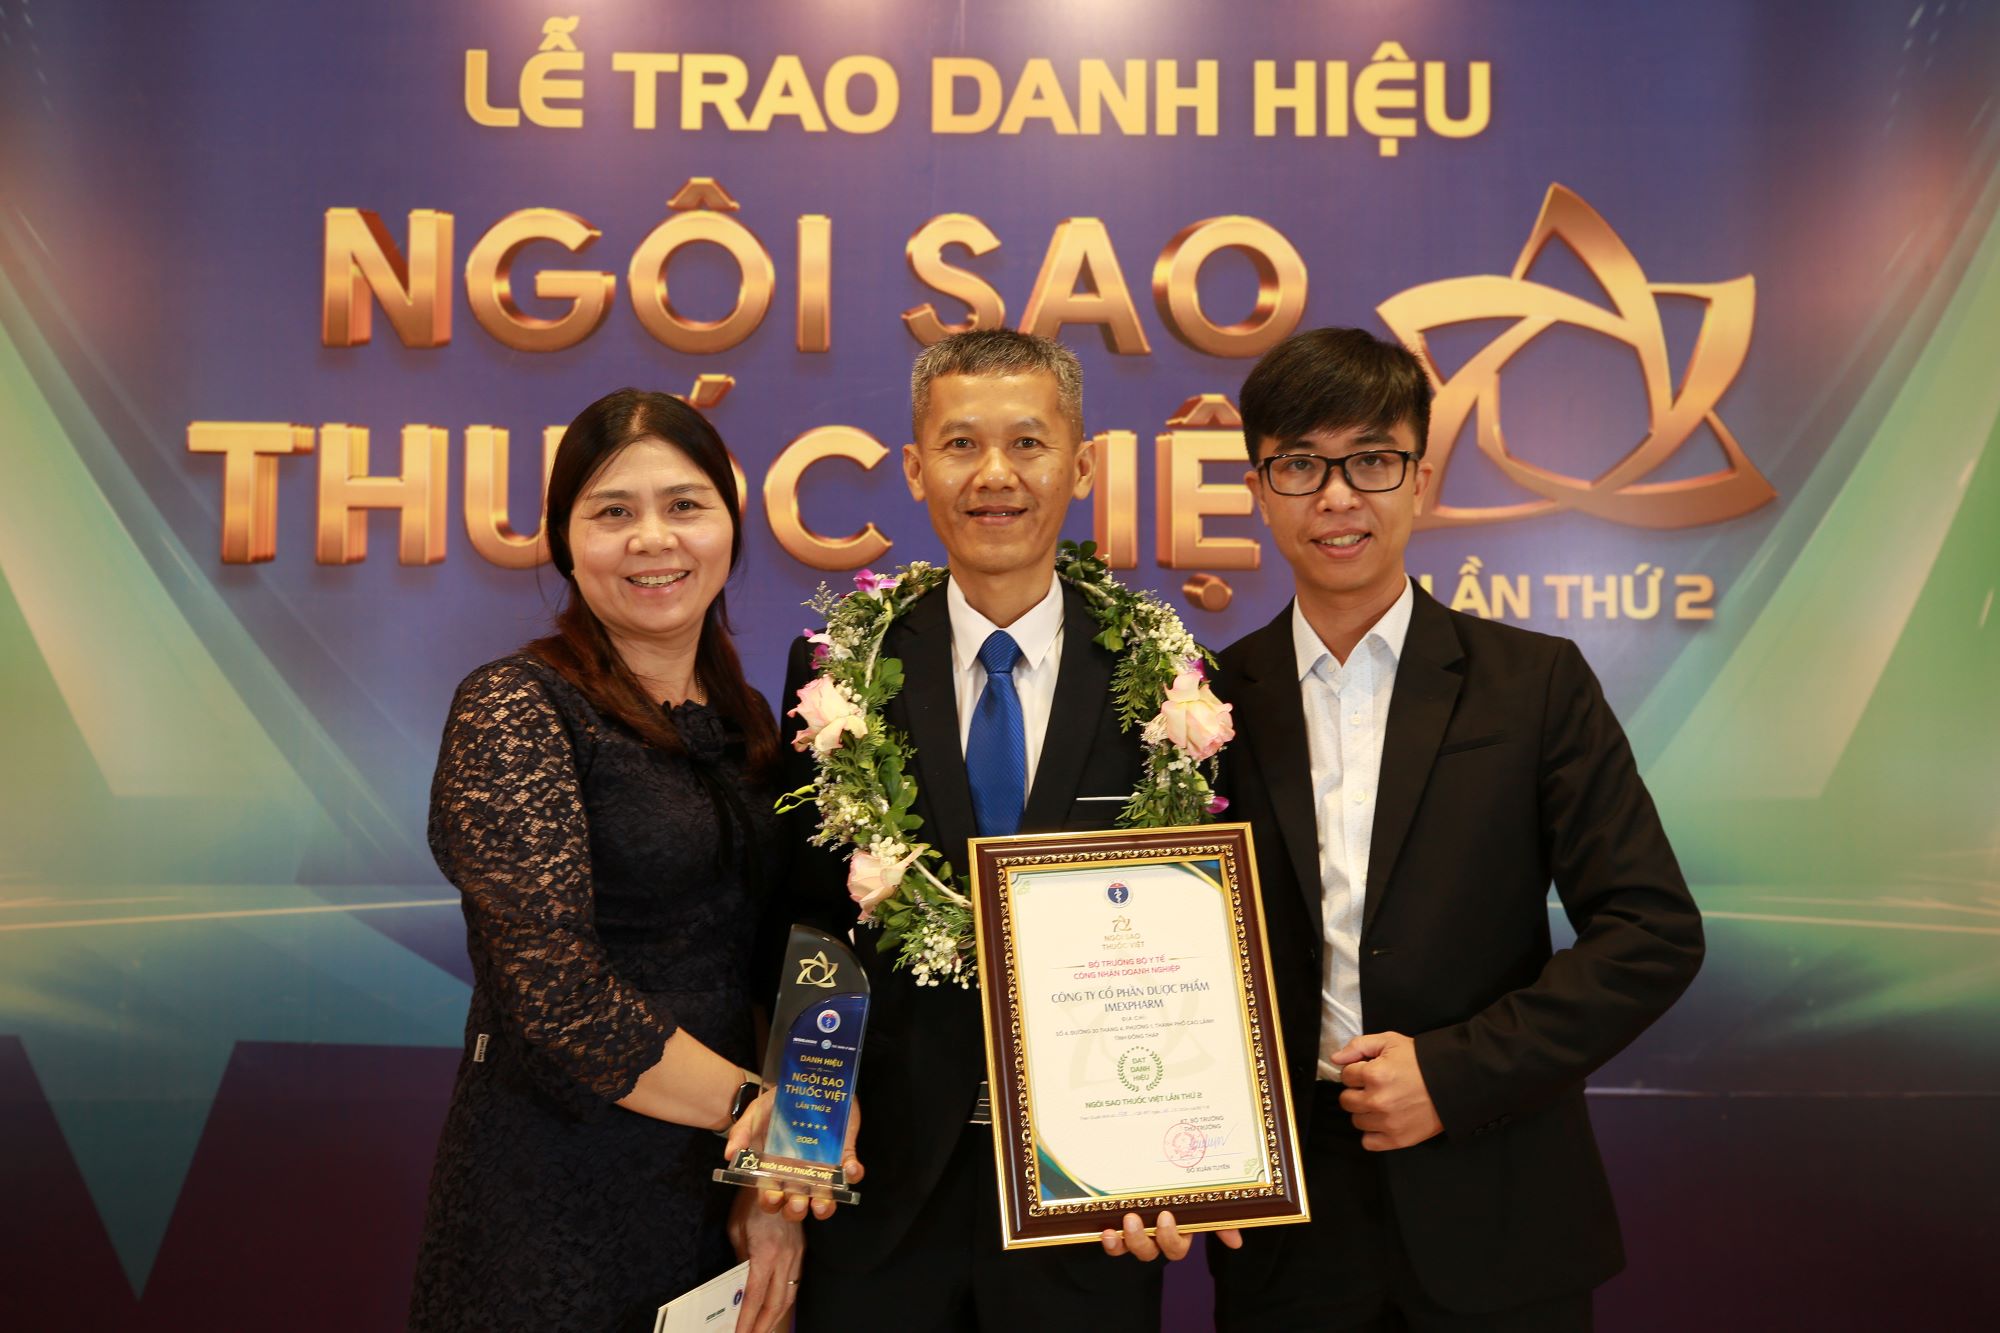 Imexpharm vinh dự nhận giải thưởng “Ngôi Sao Thuốc Việt" lần thứ II, khẳng định vị thế dẫn đầu về chất lượng EU-GMP tại Việt Nam